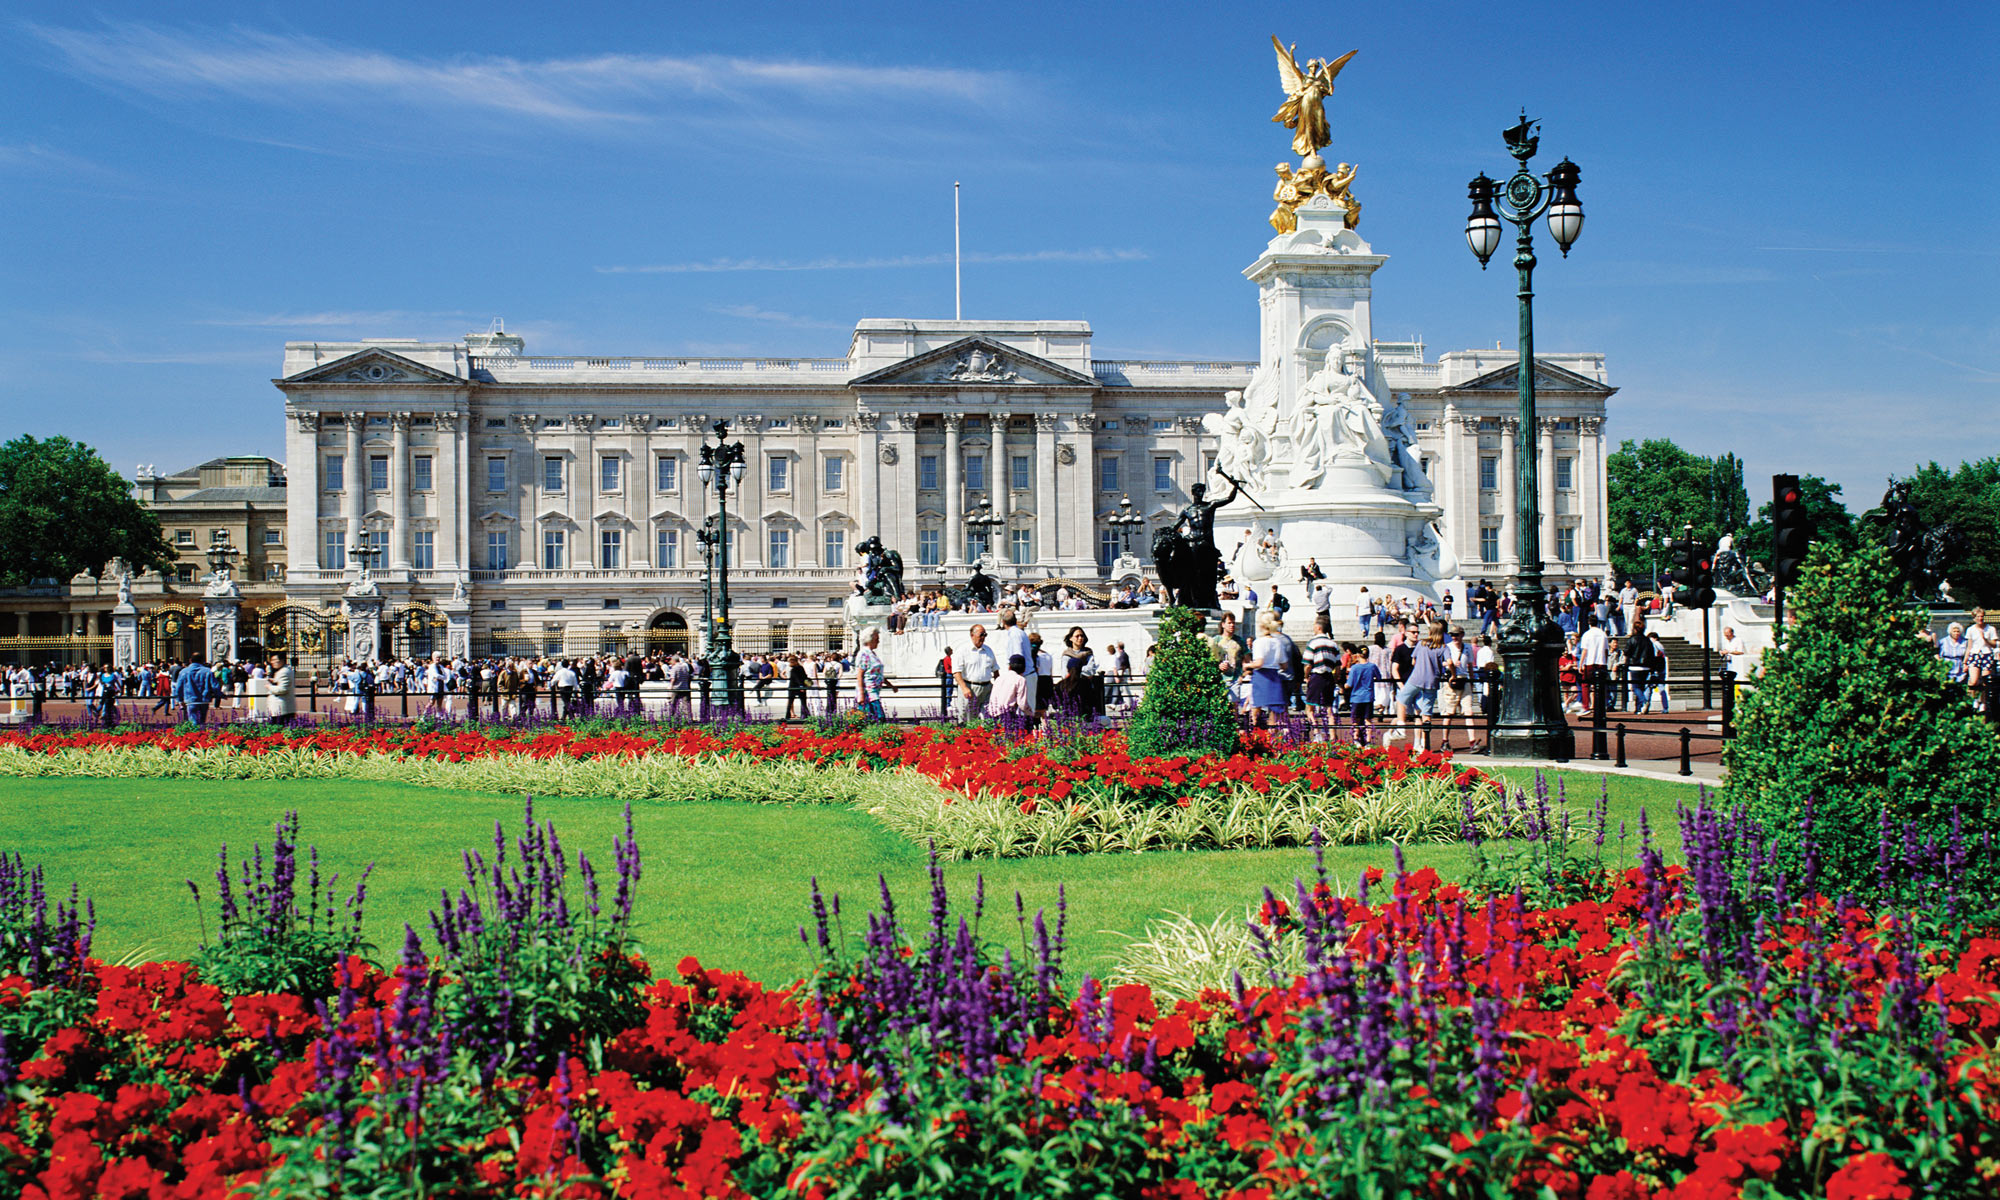 Buckingham Palace #24